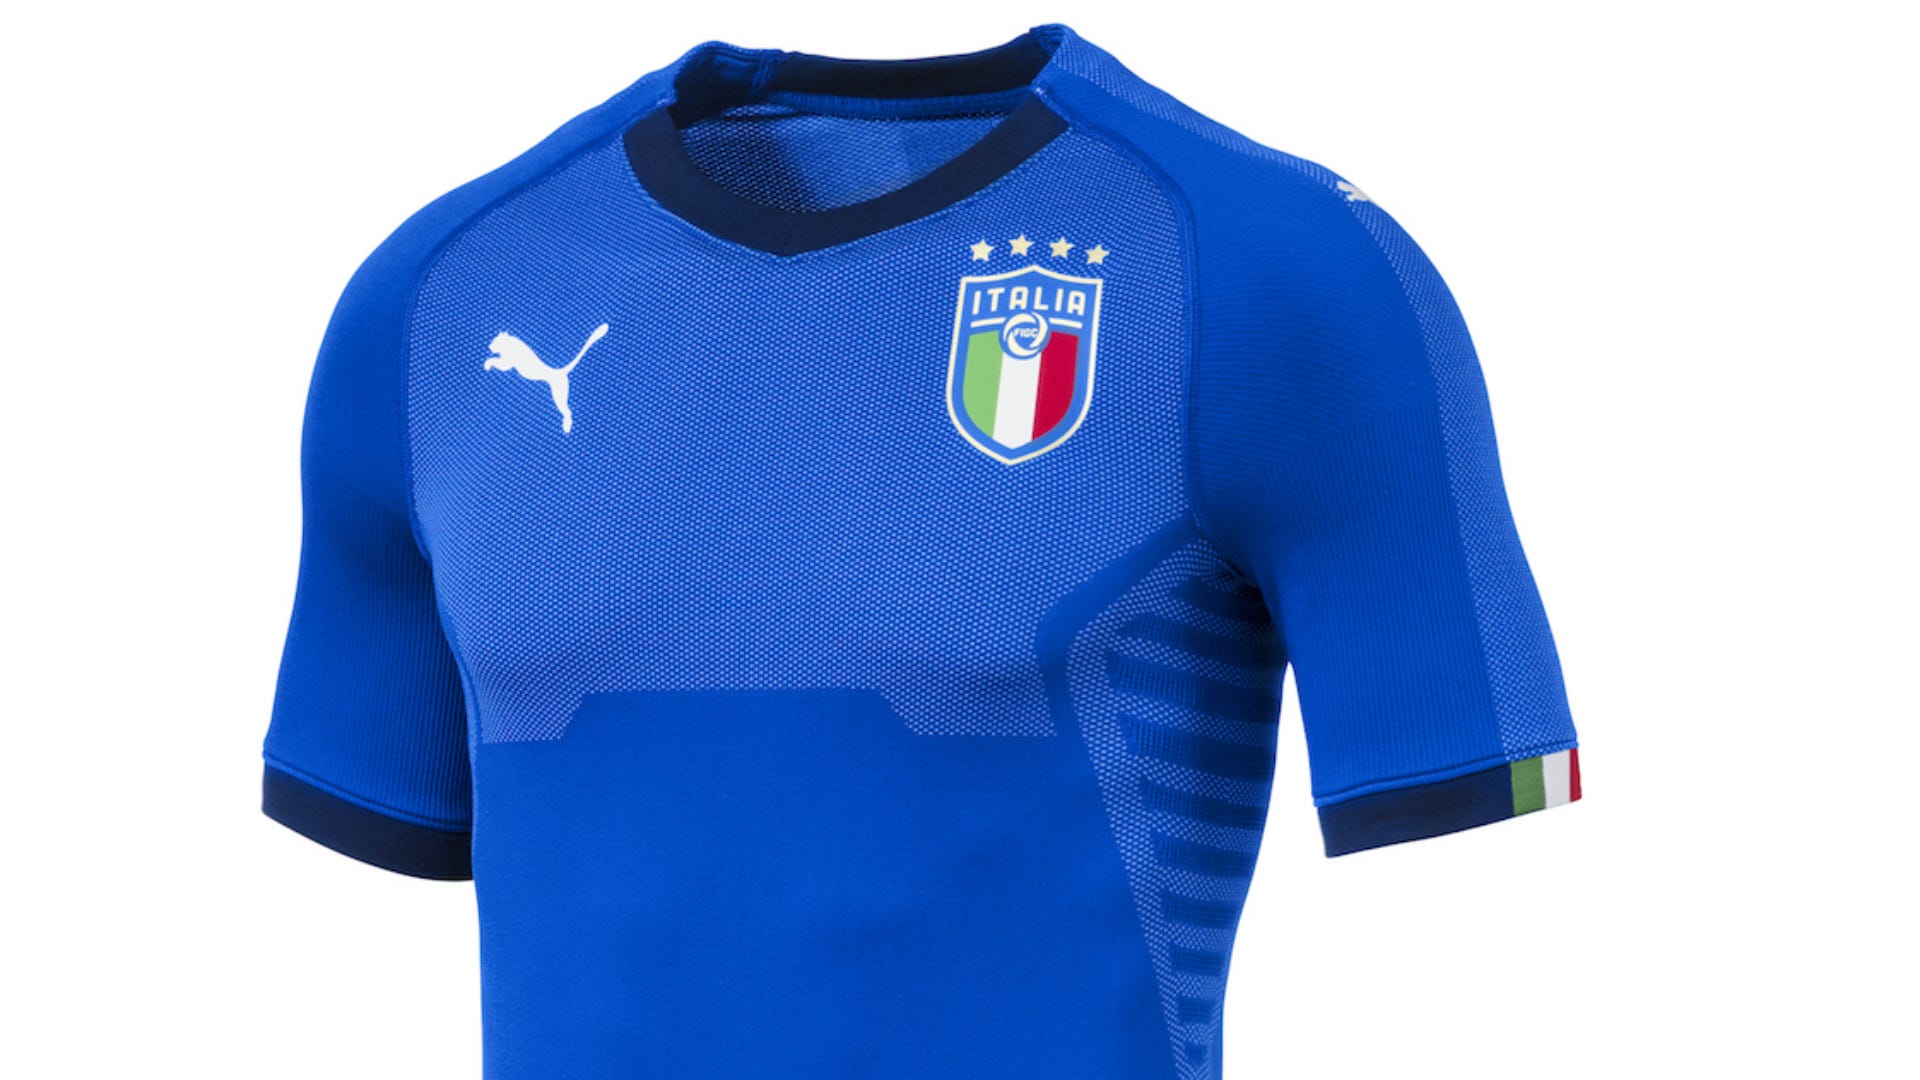 Perché la maglia della Nazionale italiana è blu?